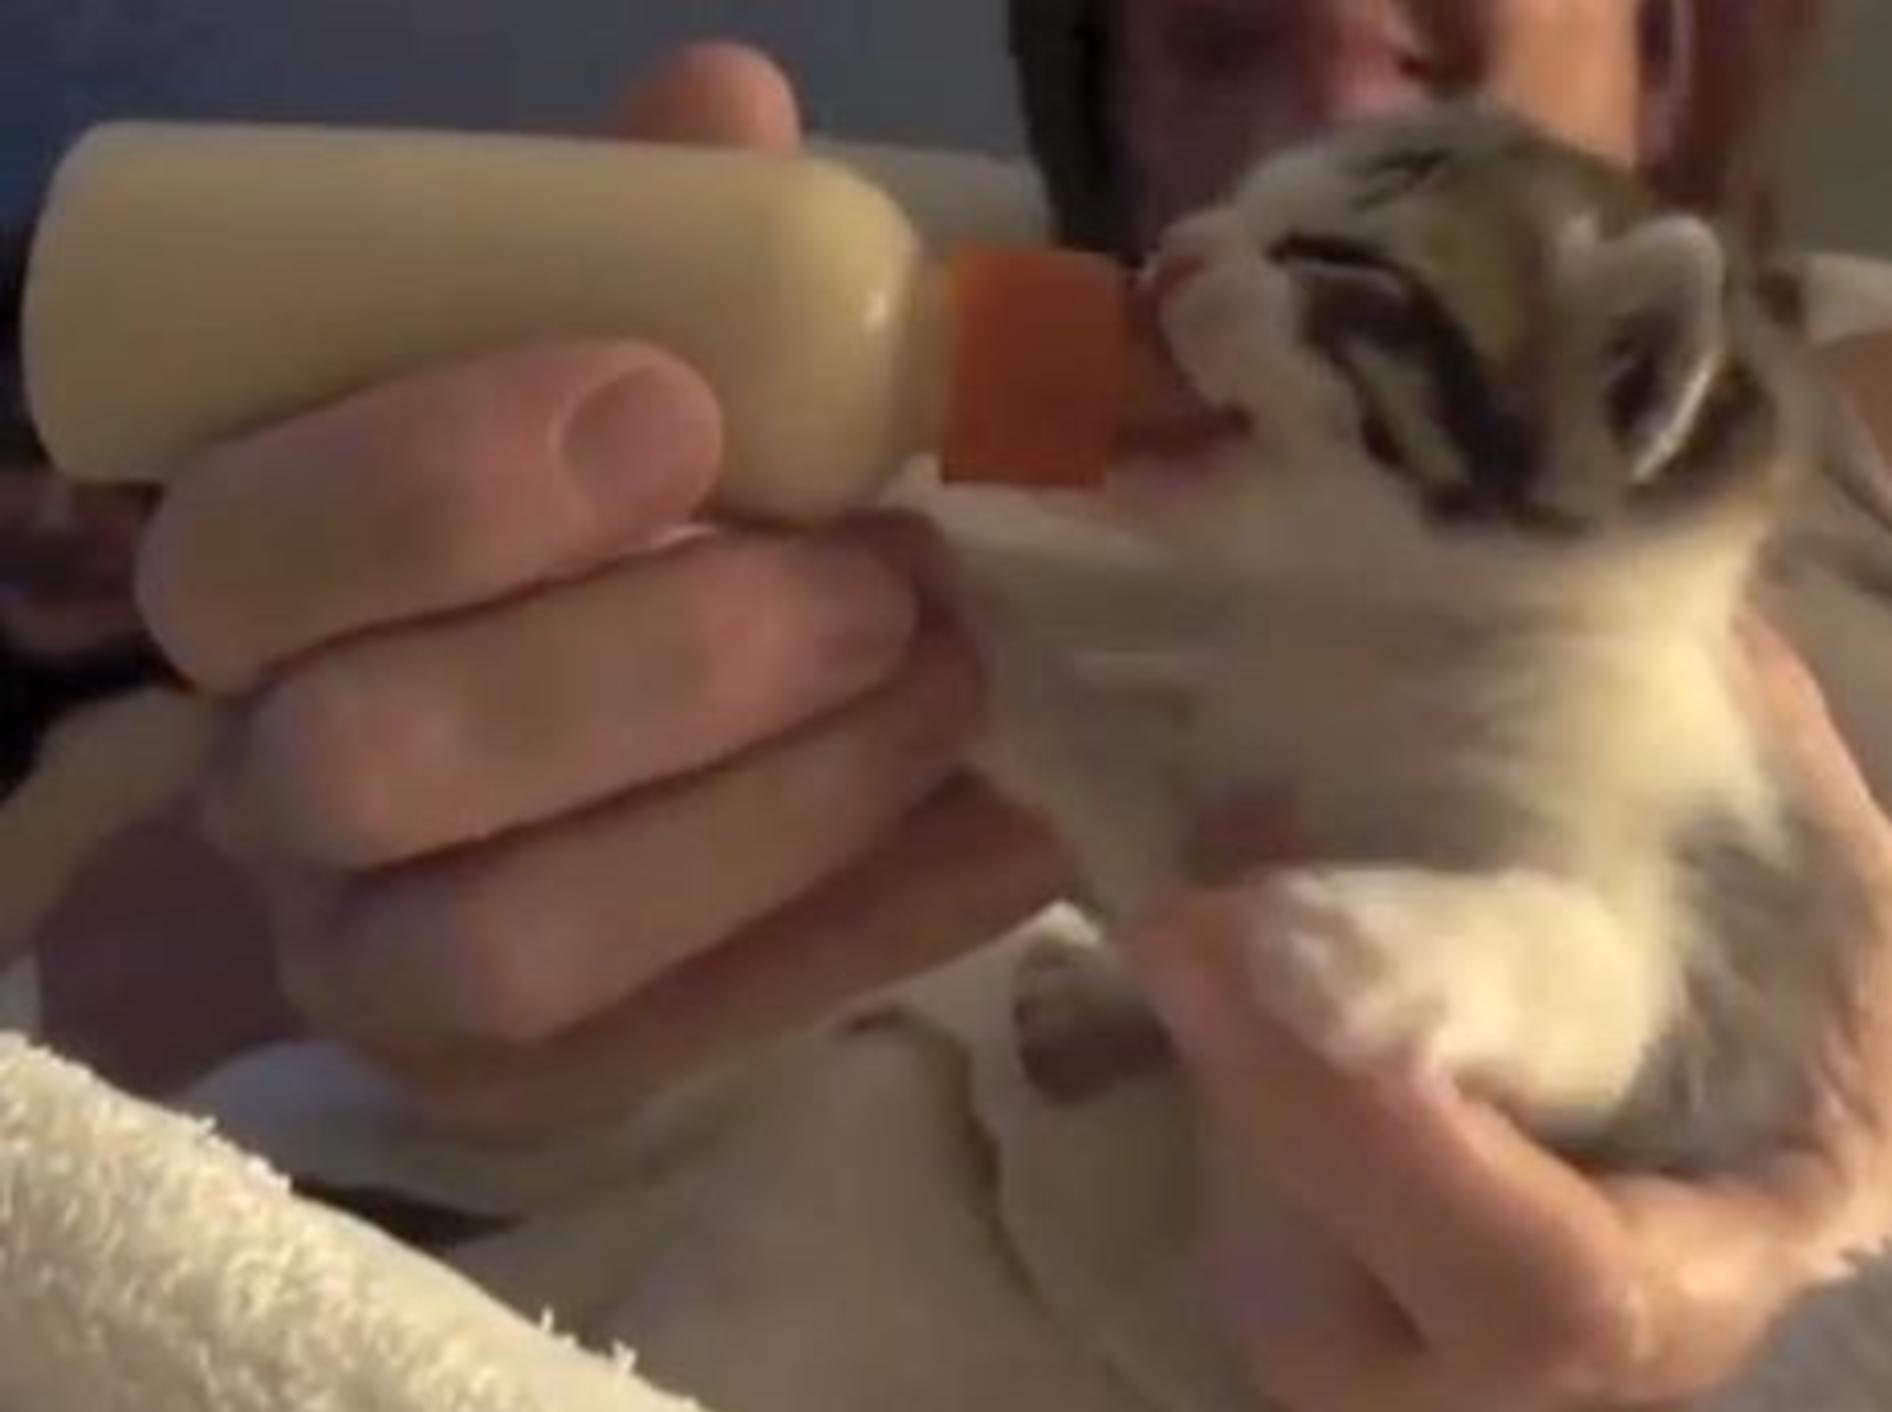 Nanu Kätzchen, was sind denn das für Geräusche? – Bild: Youtube / leah Heit